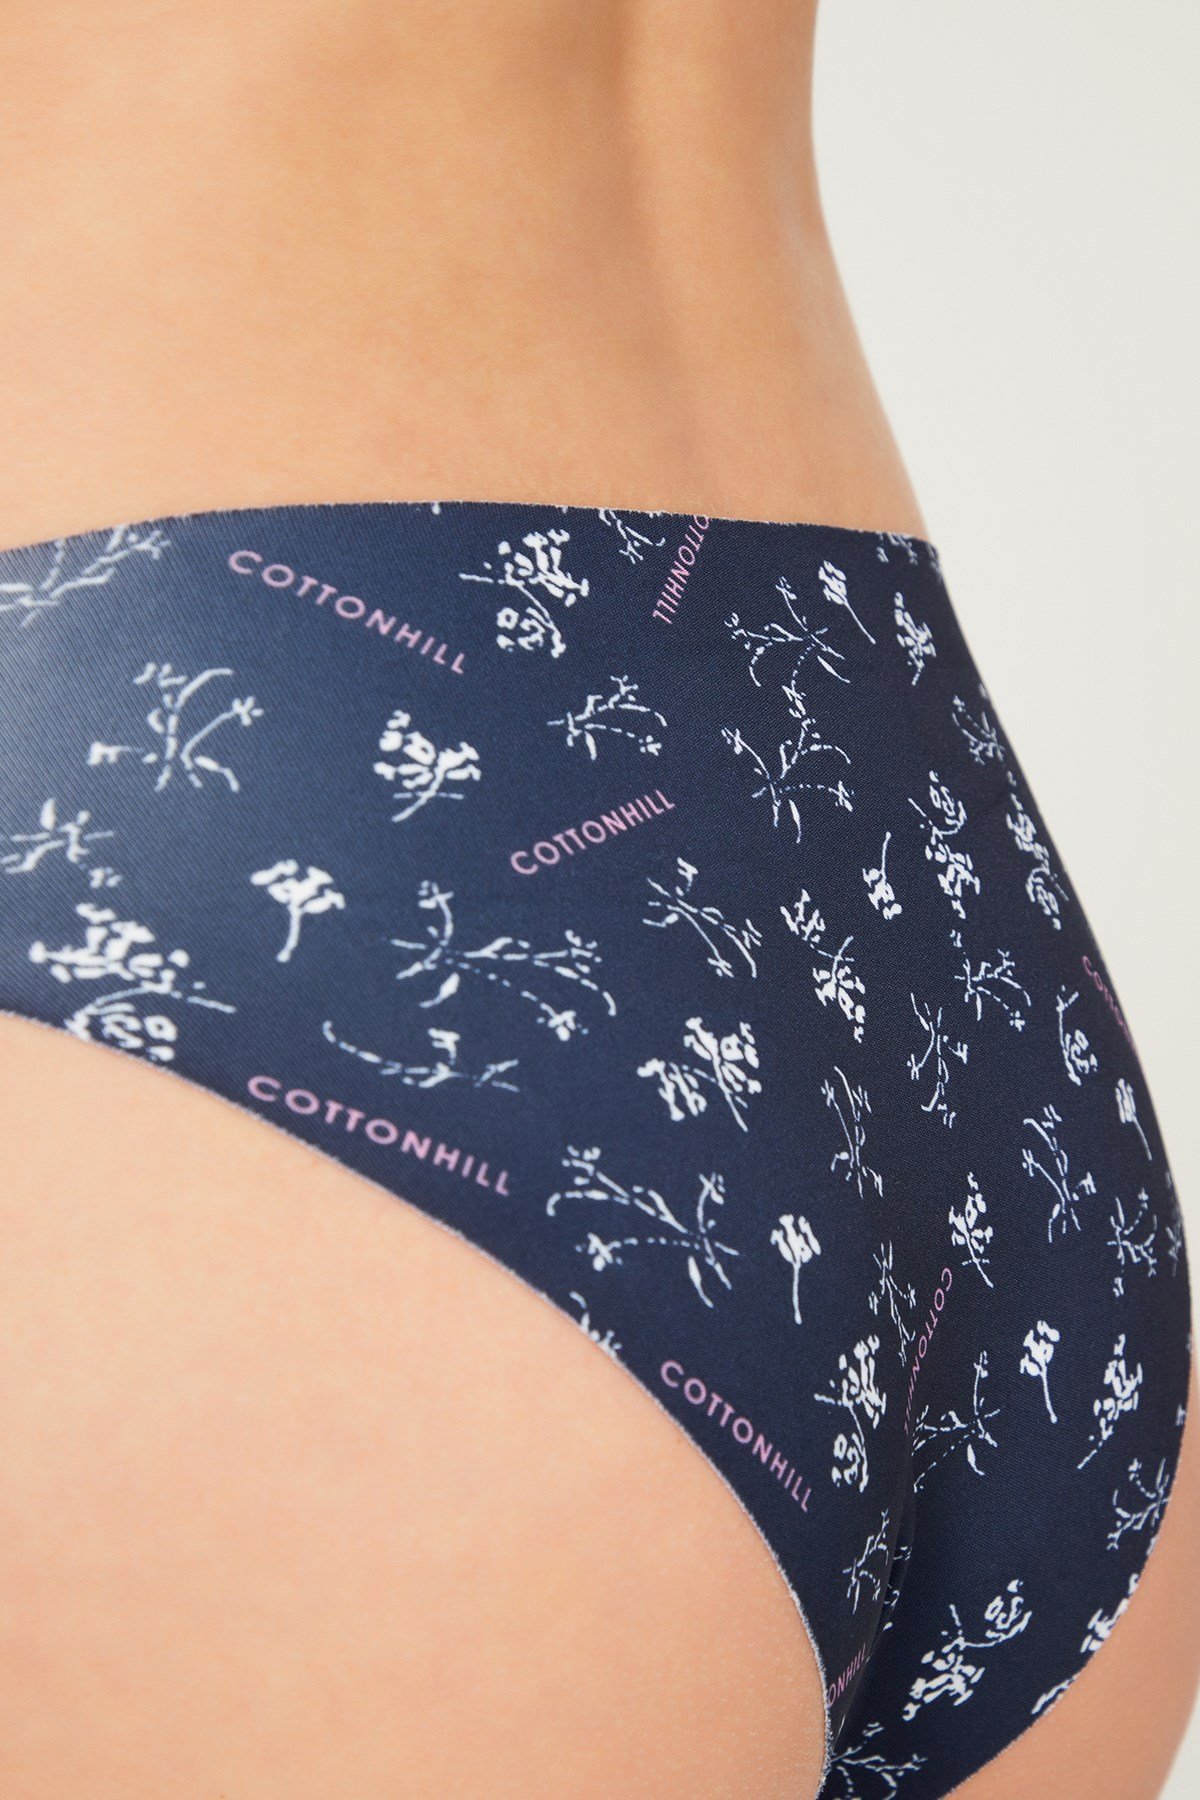 Bikini Cut Panties for Women  Cottonhill Underwear & Lingerie